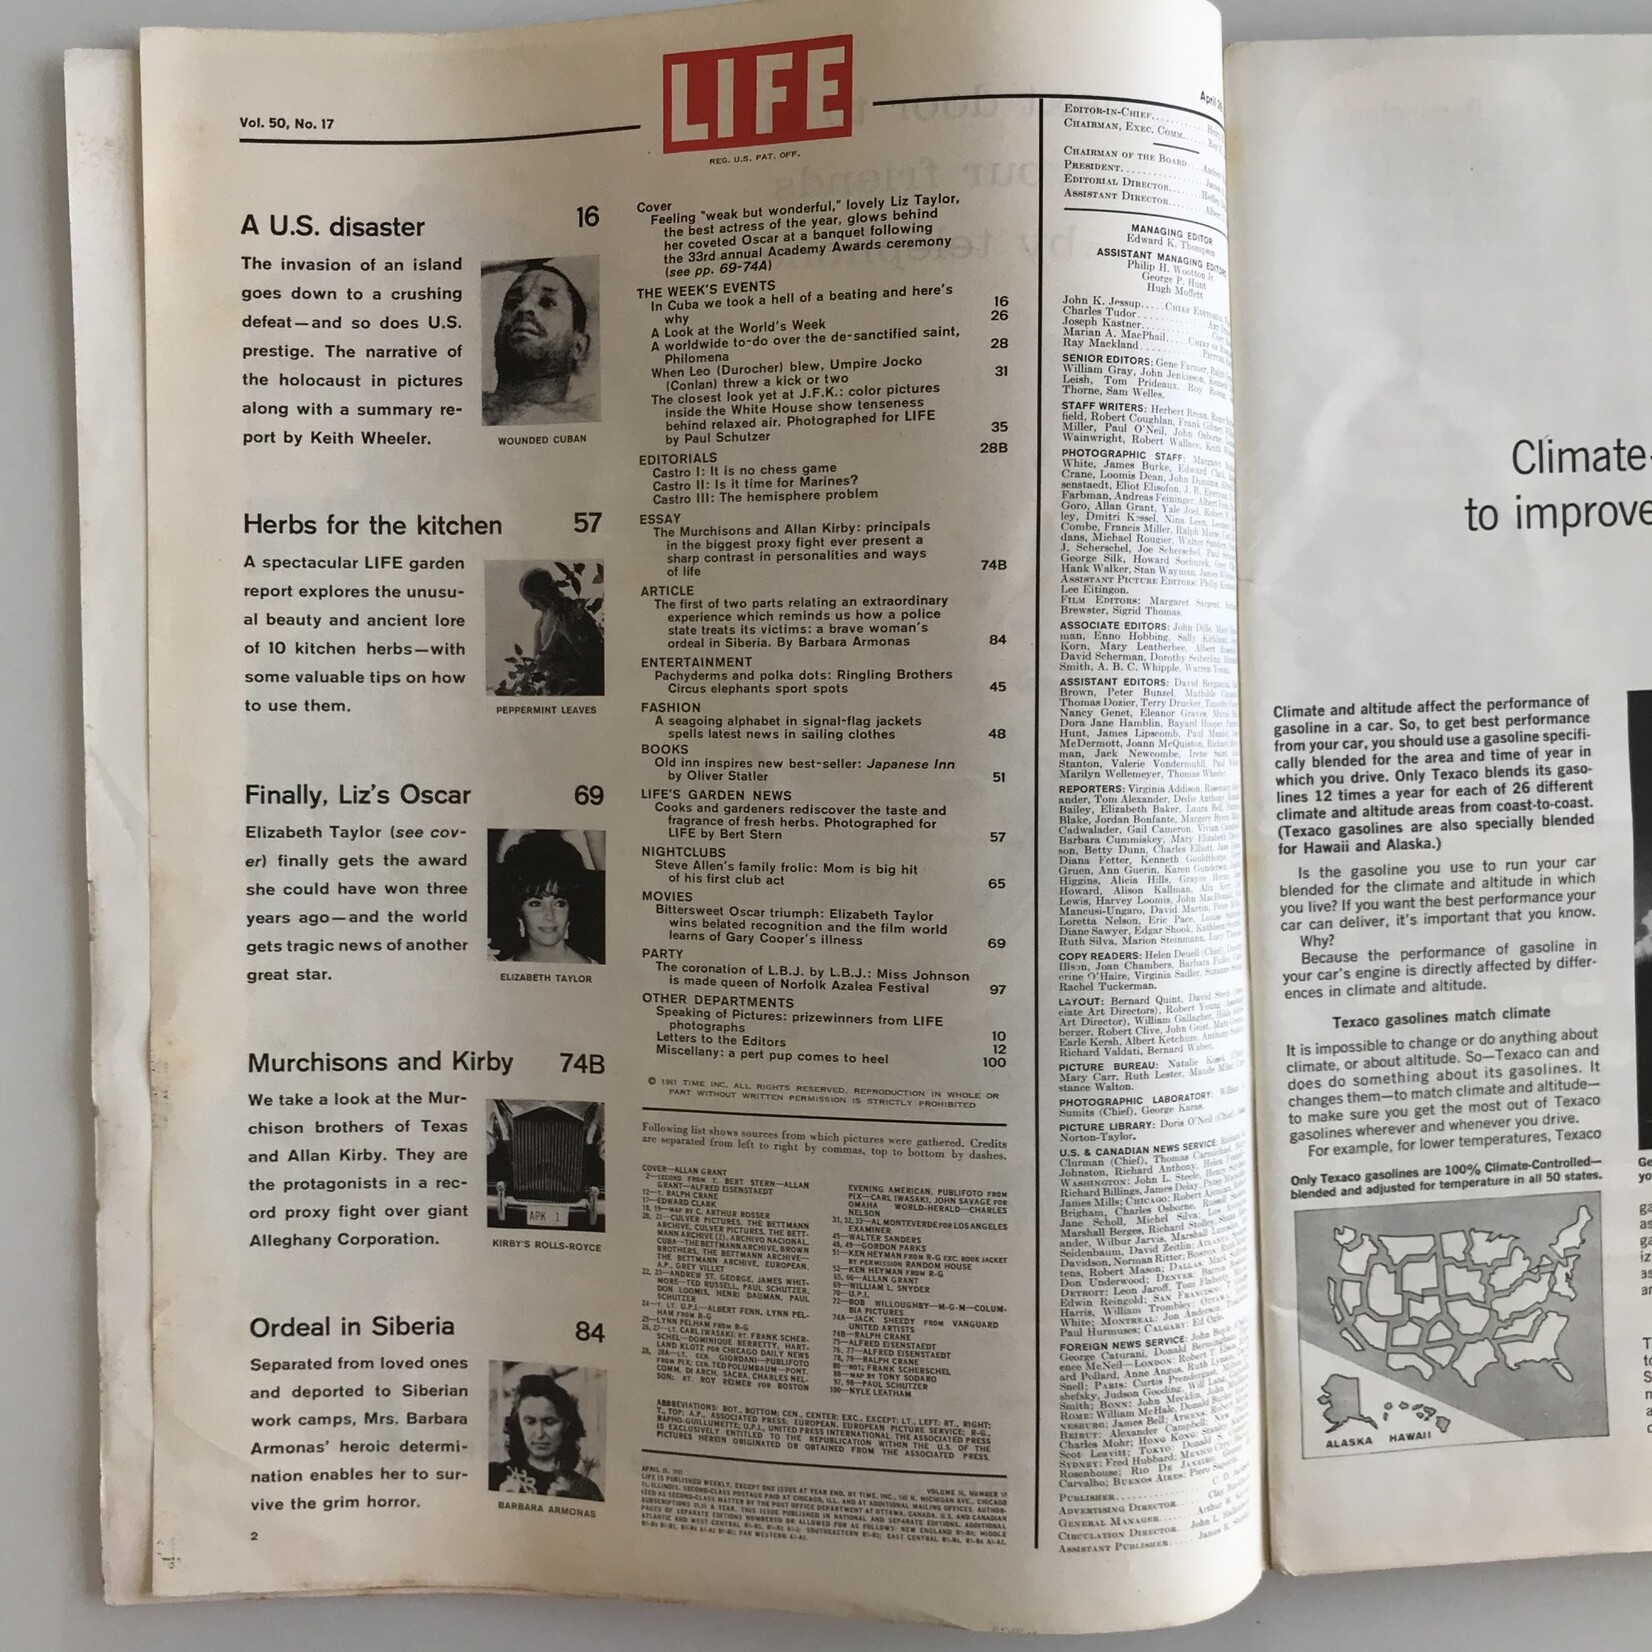 LIFE - 1961-04-28, Elizabeth Taylor - Magazine (USED)